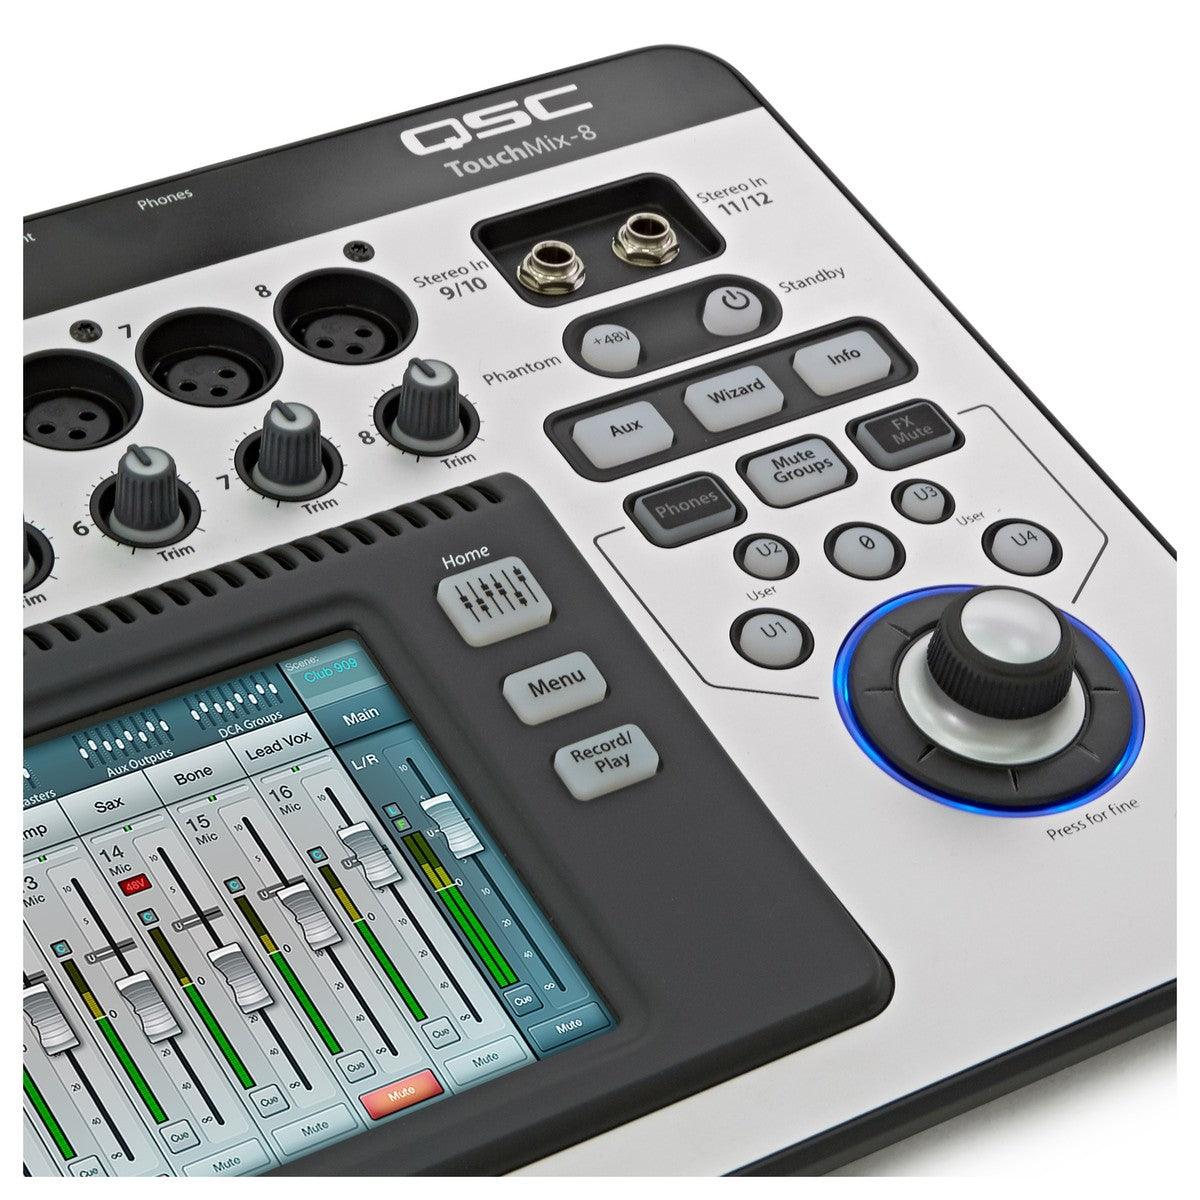 QSC TouchMix 8 Compact Digital Mixer - DY Pro Audio